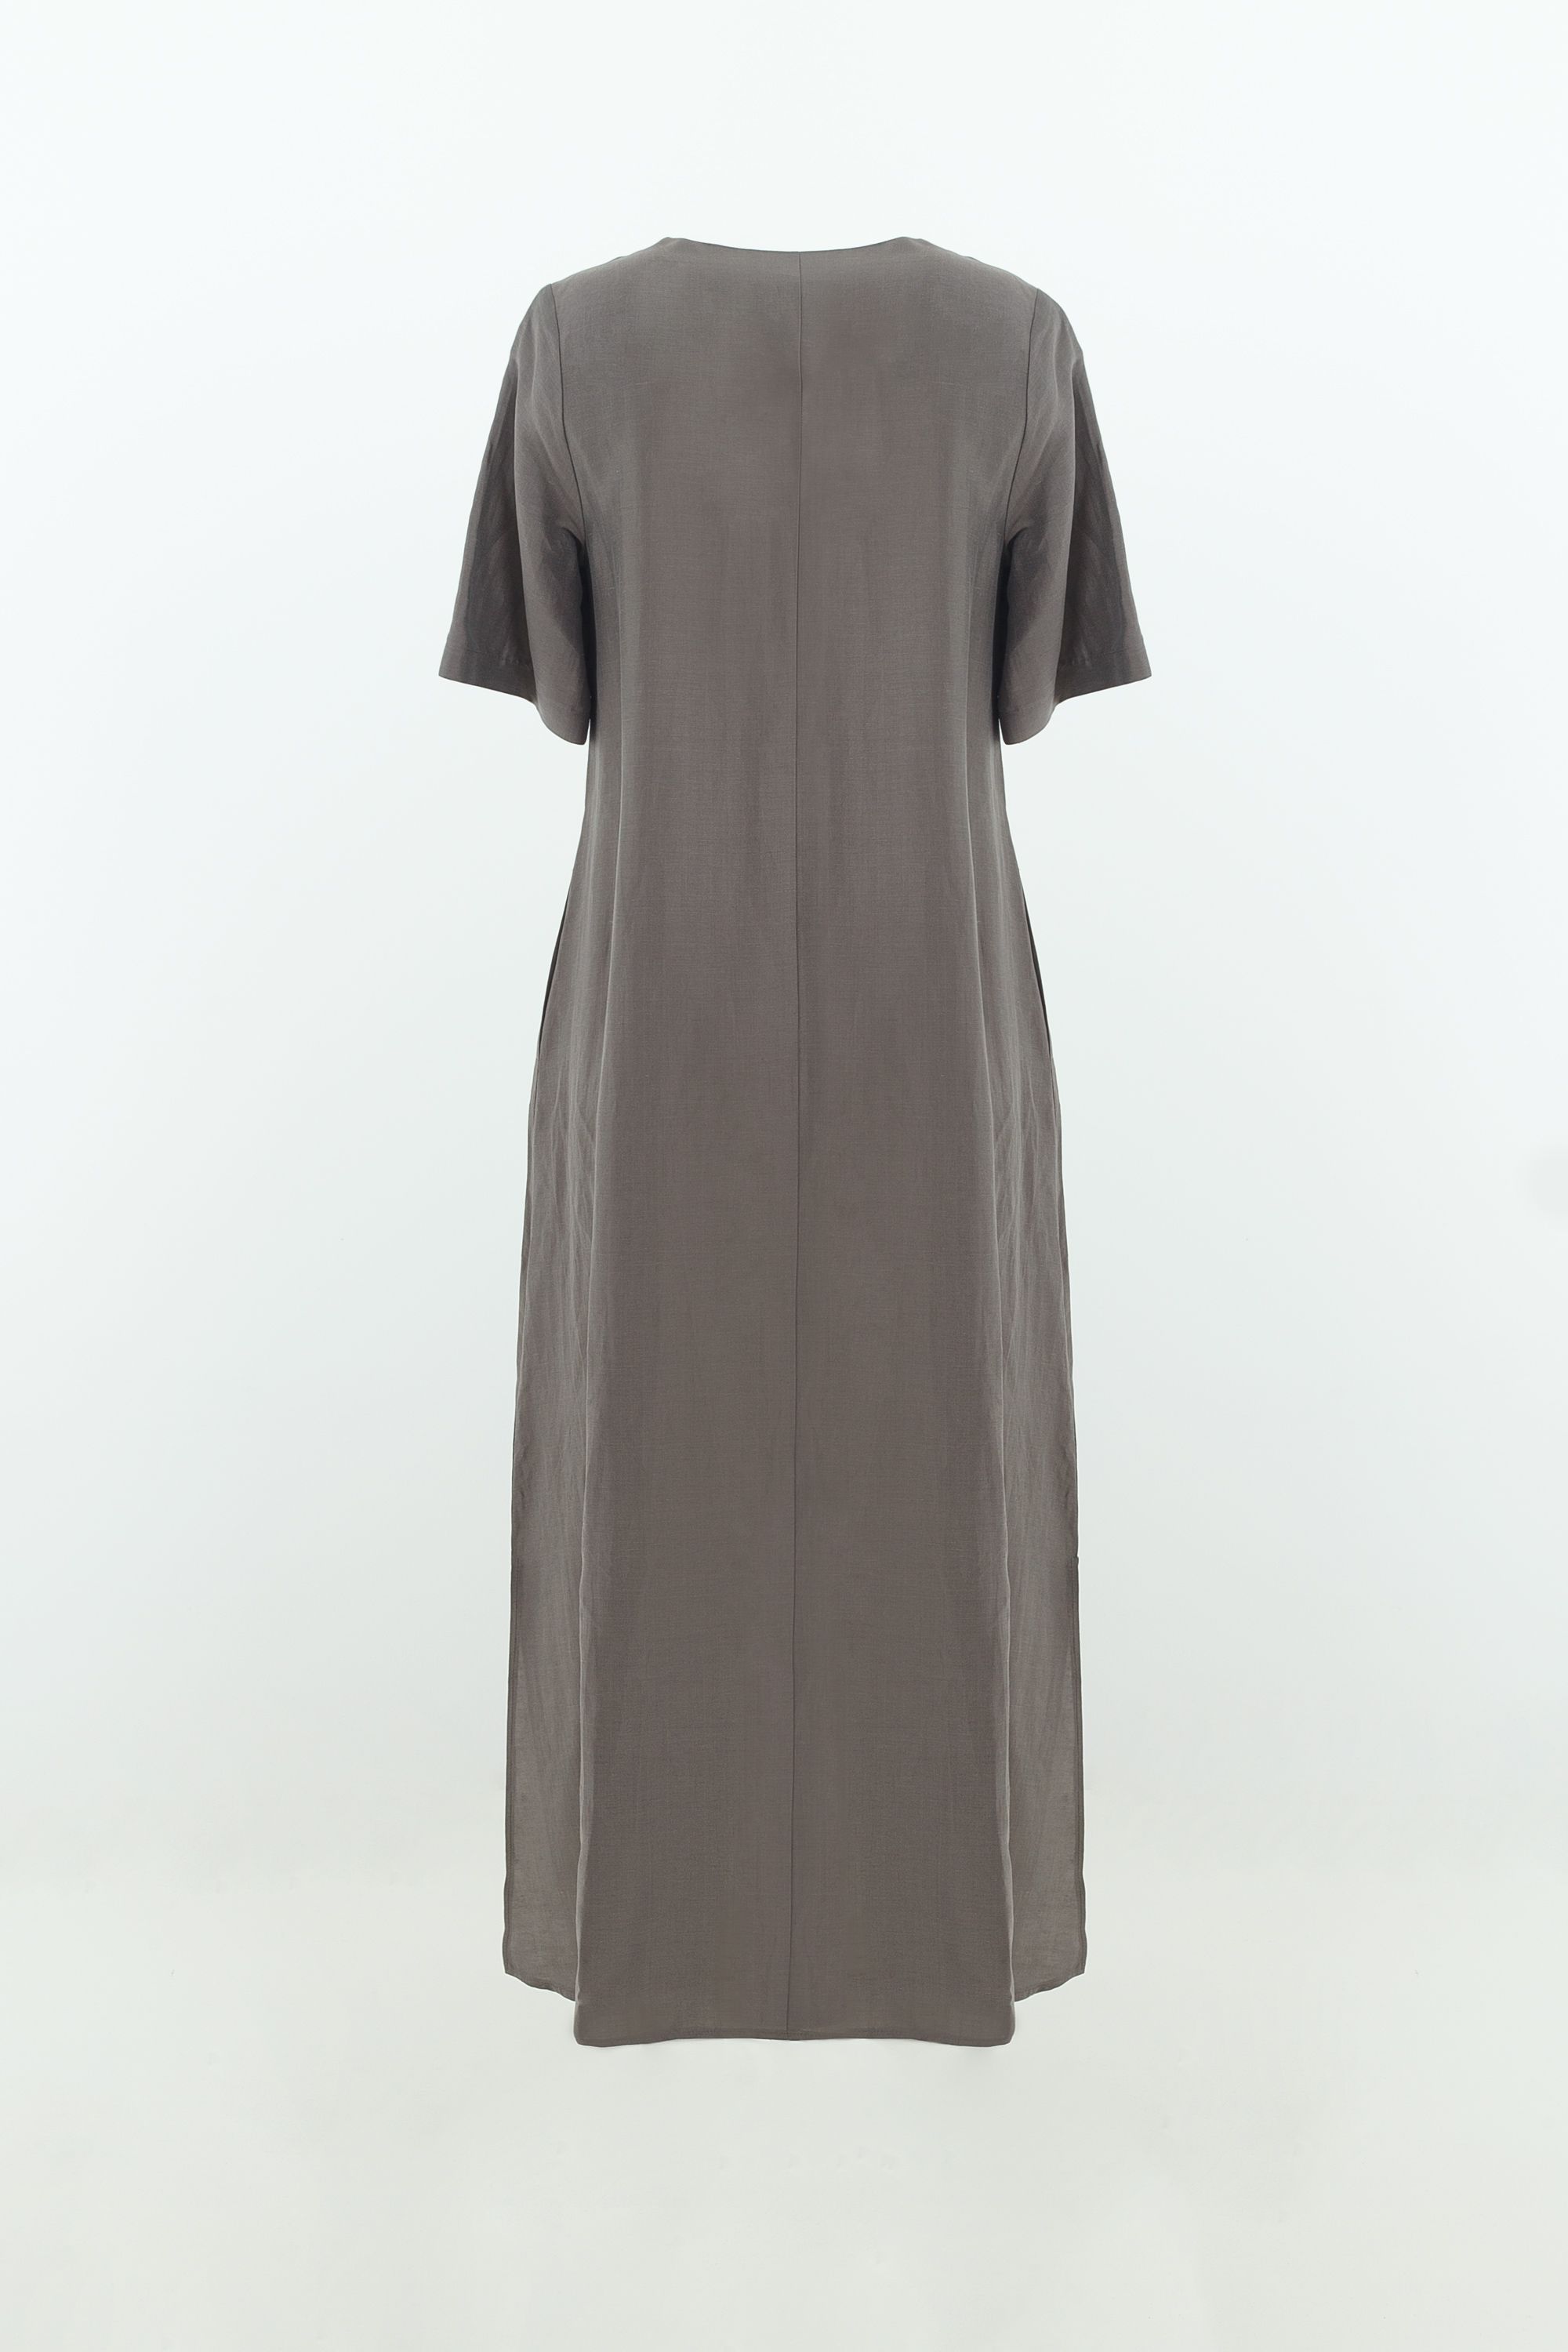 Платье женское 5К-11943-1. Фото 2.